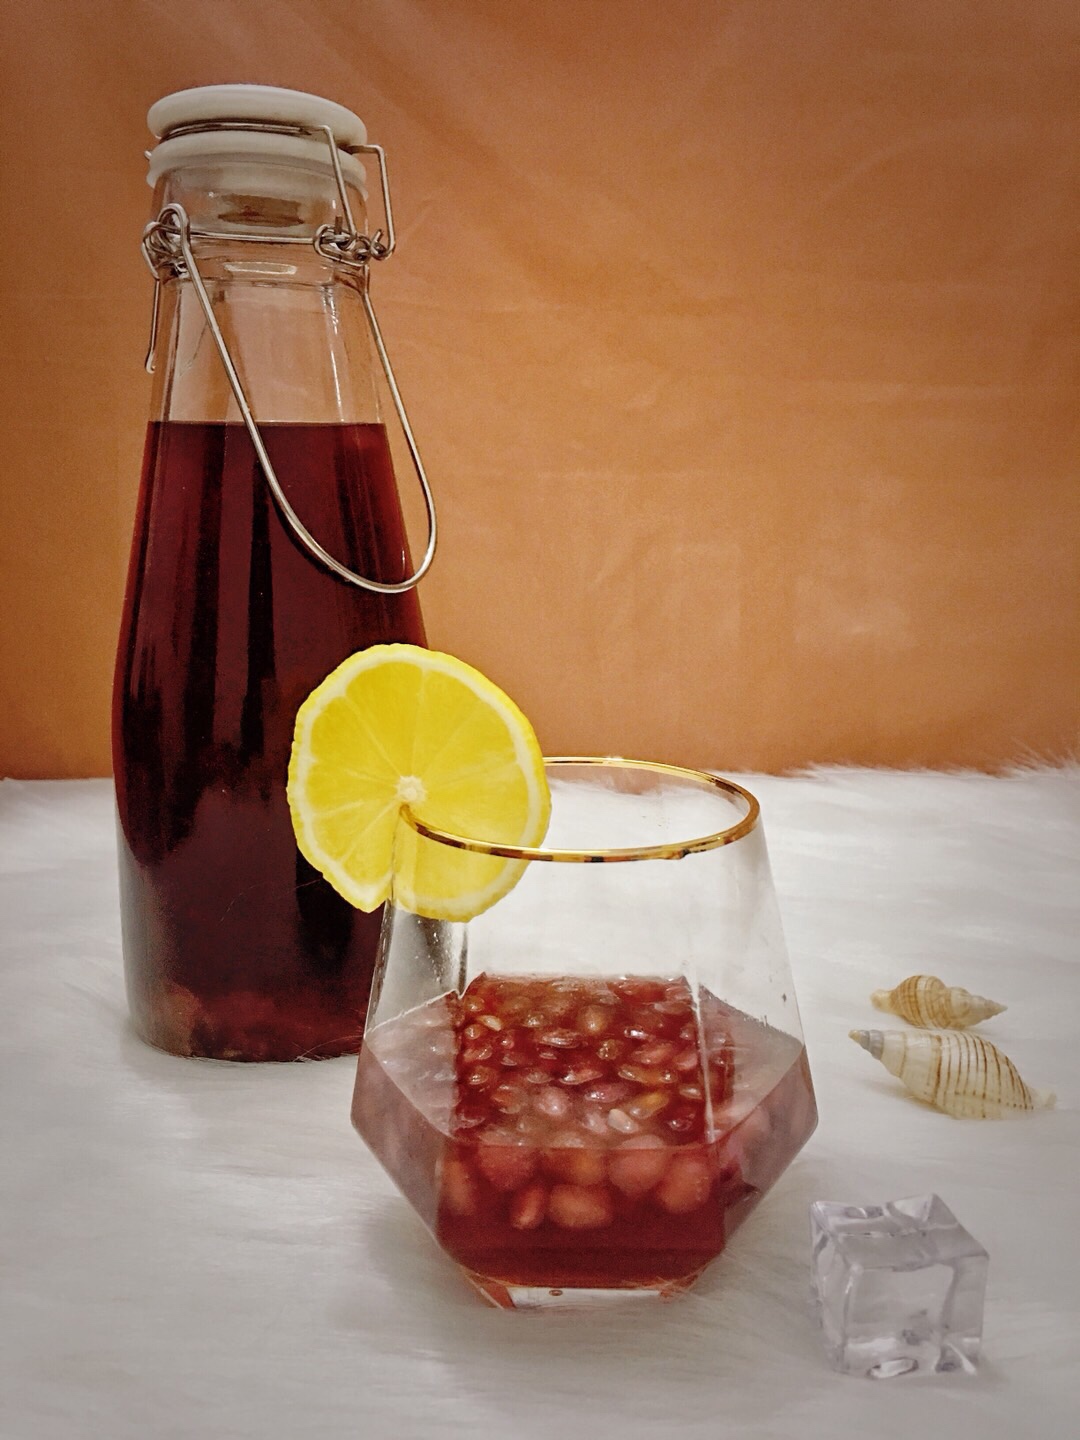 石榴酒(2/3黄酒制,低度美味养生,常饮改善手脚冰凉)的做法